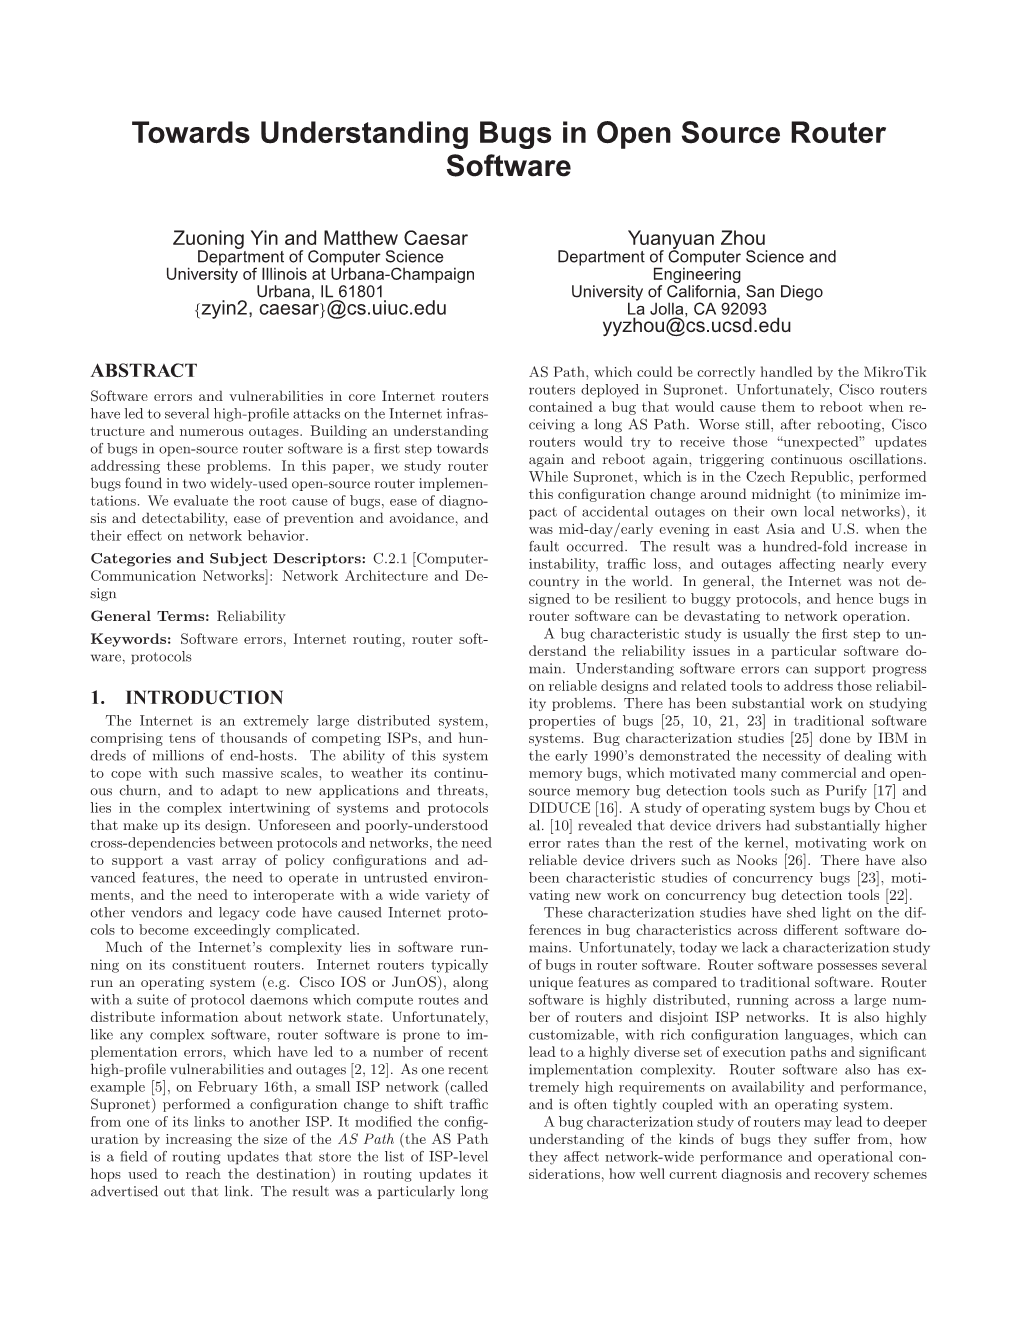 Towards Understanding Bugs in Open Source Router Software